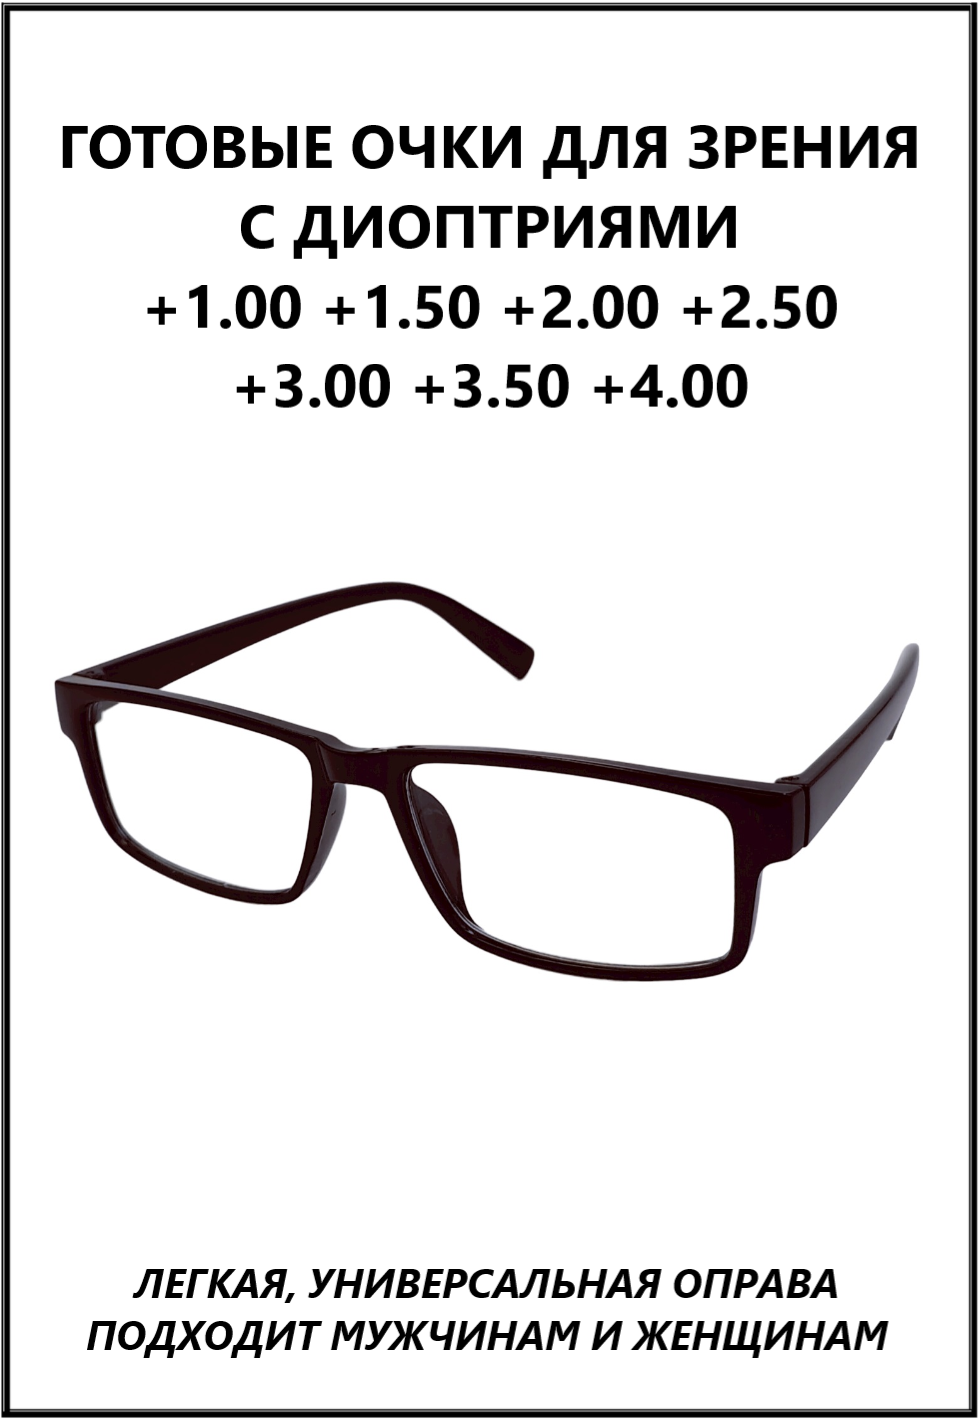 Очки готовые пластиковые с диоптриями +3.50 корригирующие зрения и чтения женские, мужские KIND